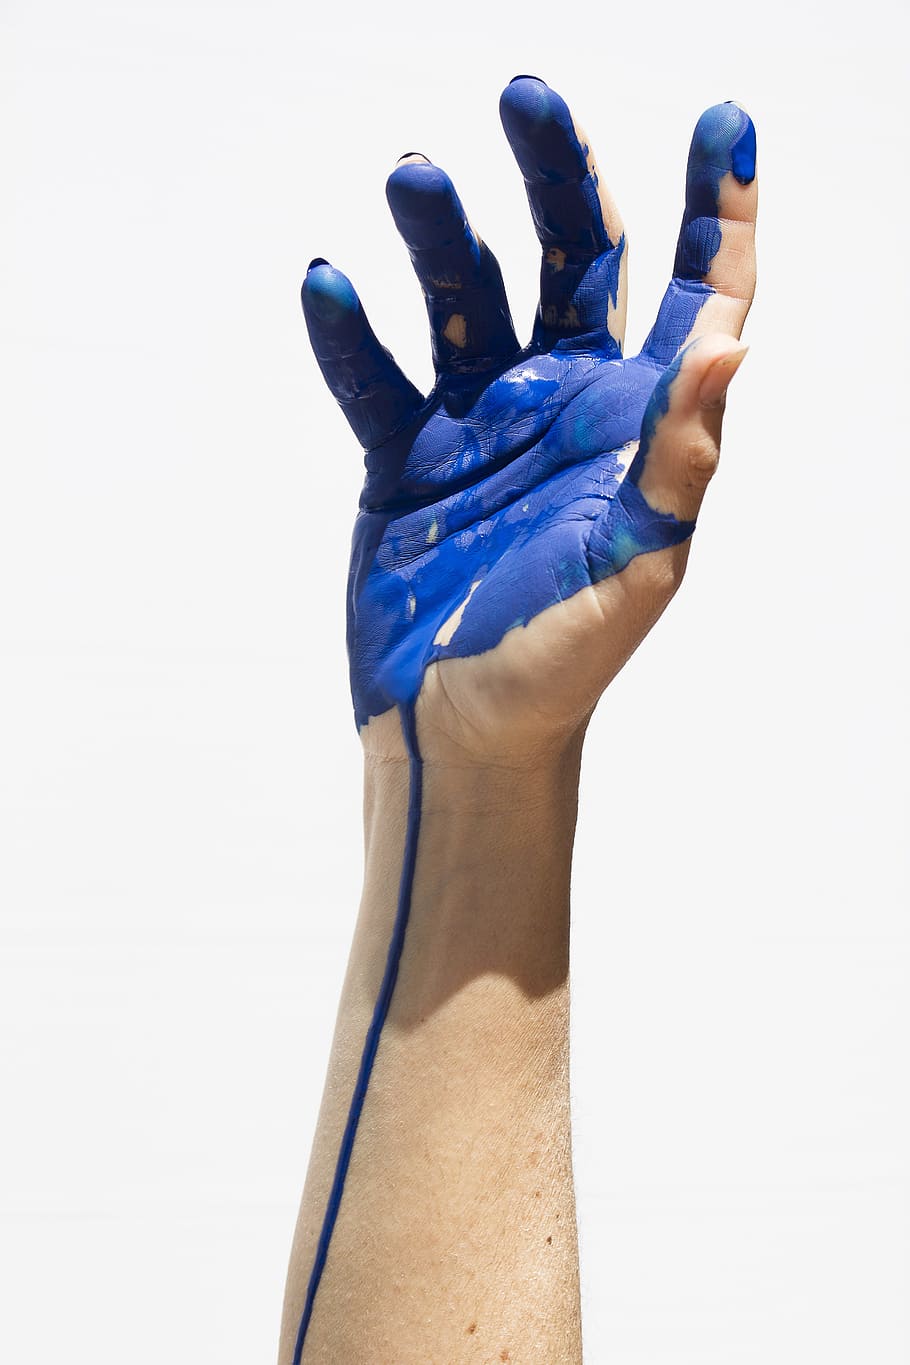 derecho, humano, mano, pintura, mano humana, color, azul, manos, parte del cuerpo humano, gesticulando